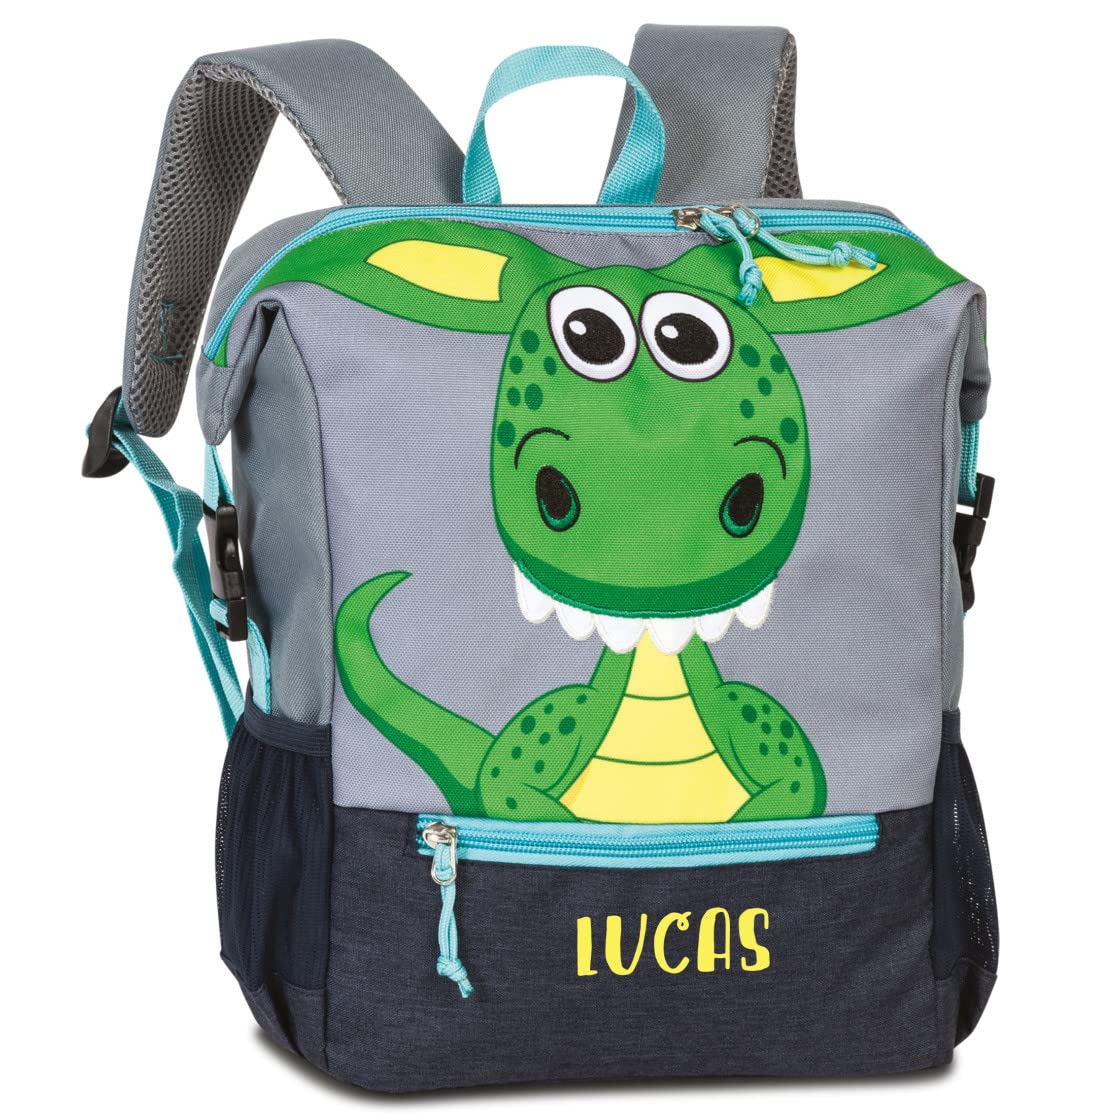 minimutz Personalisierter Kindergarten-Rucksack Dino mit Name | Kleiner Rucksack Kinder Freizeitrucksack aus recyceltem Material Tiermotiv Jungen